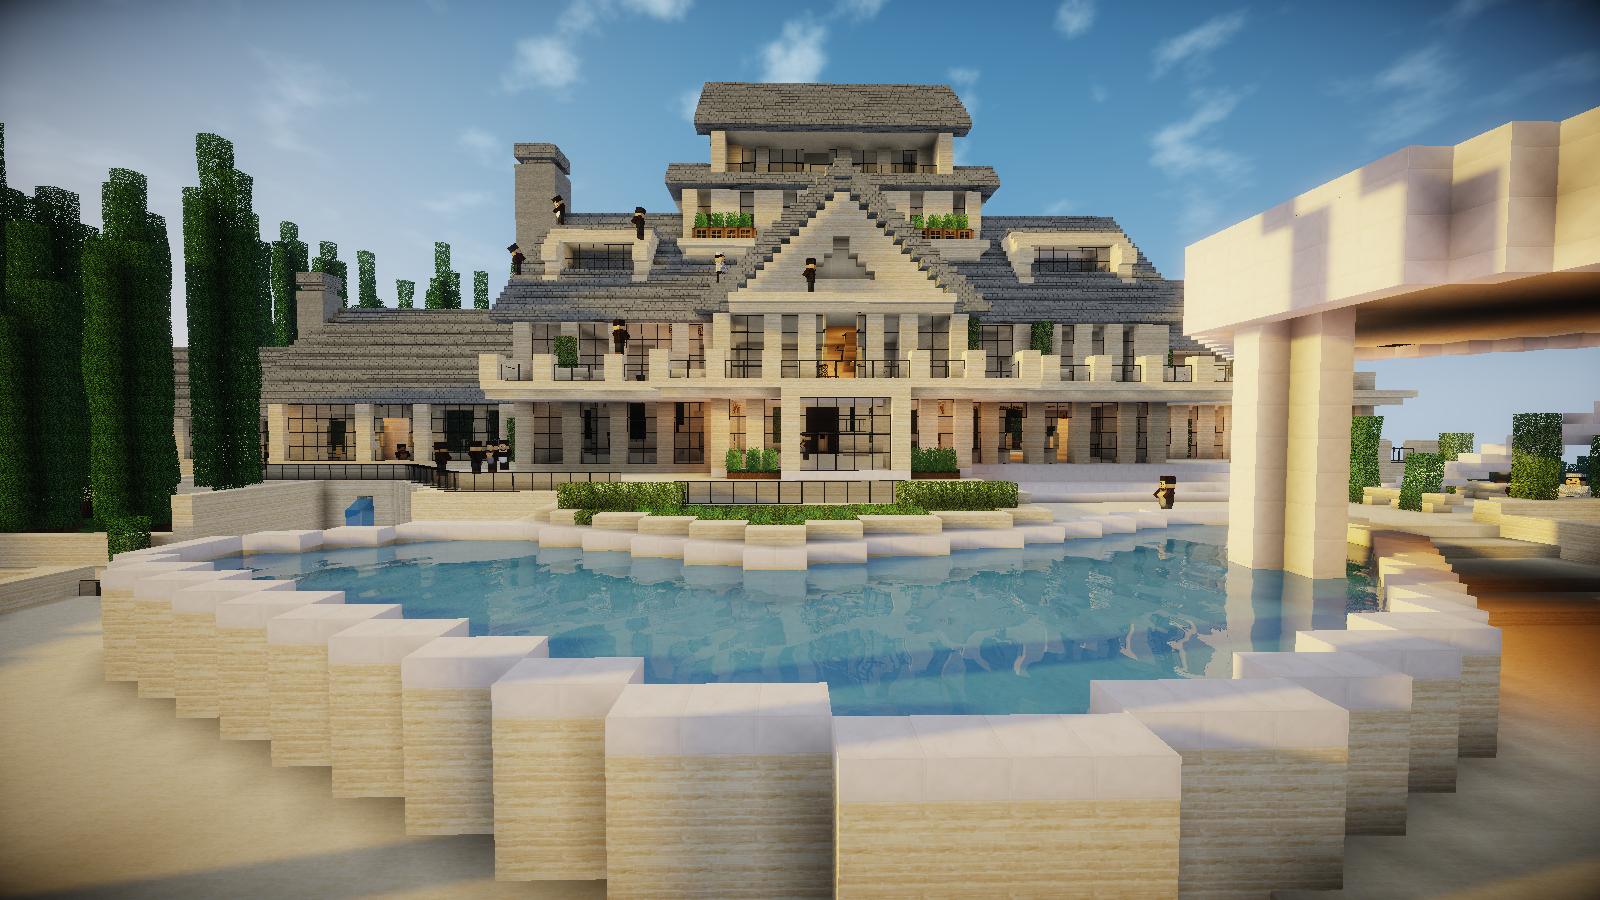 Minecraft - Como fazer uma Casa Moderna - Tutorial Manyacraft